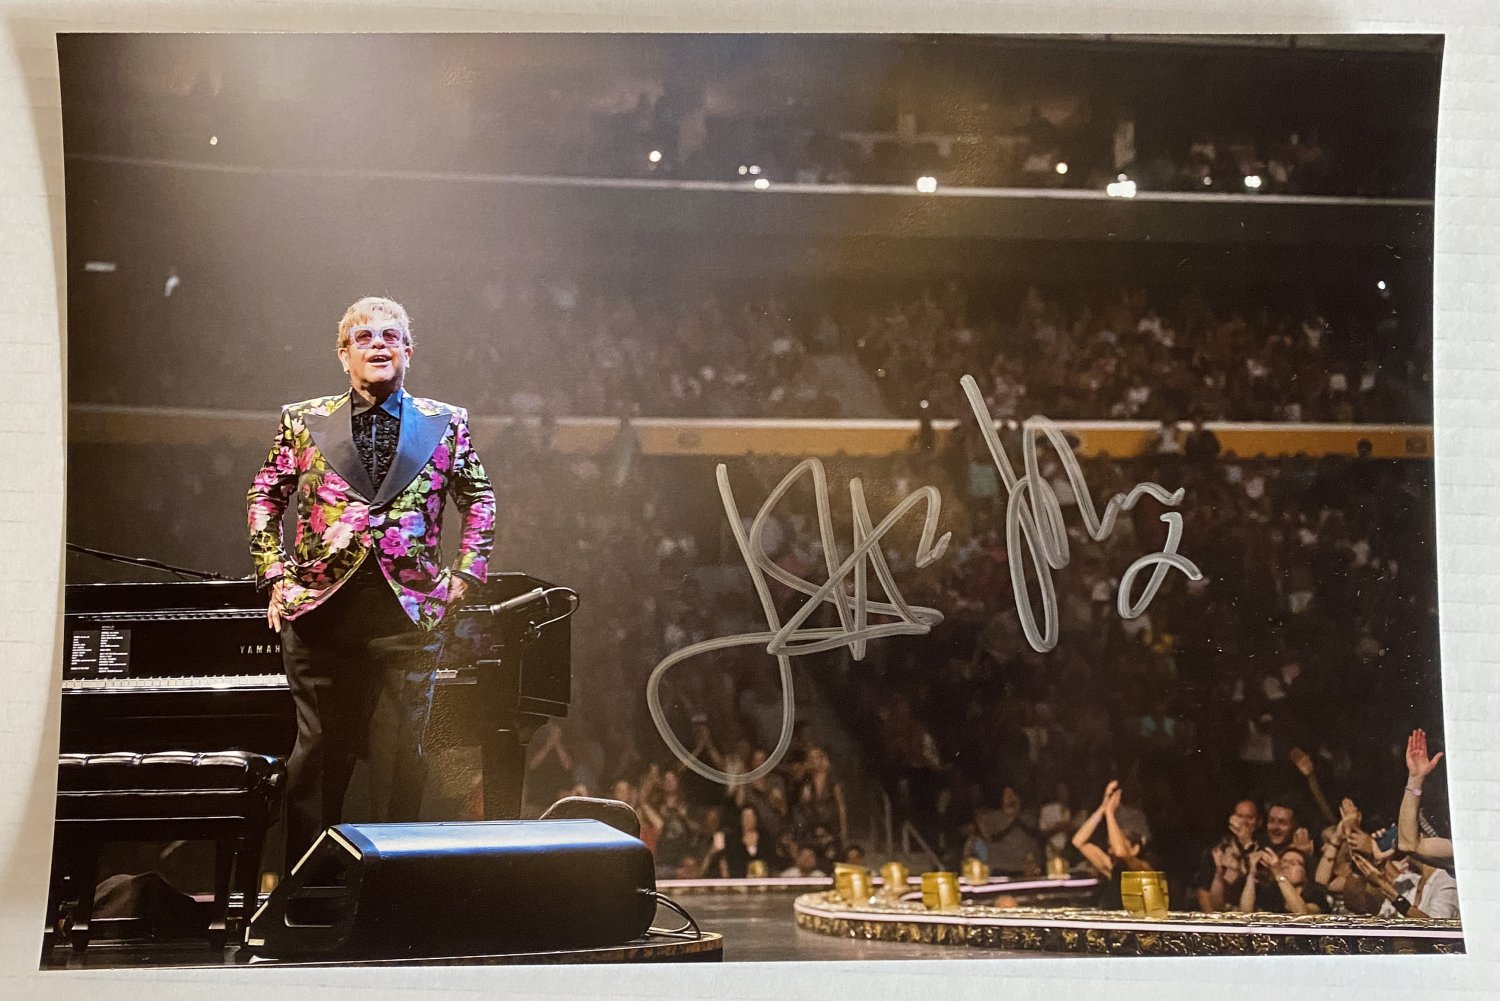 Elton John signed autographed 8x12 photo photograph Rocket Man autographs